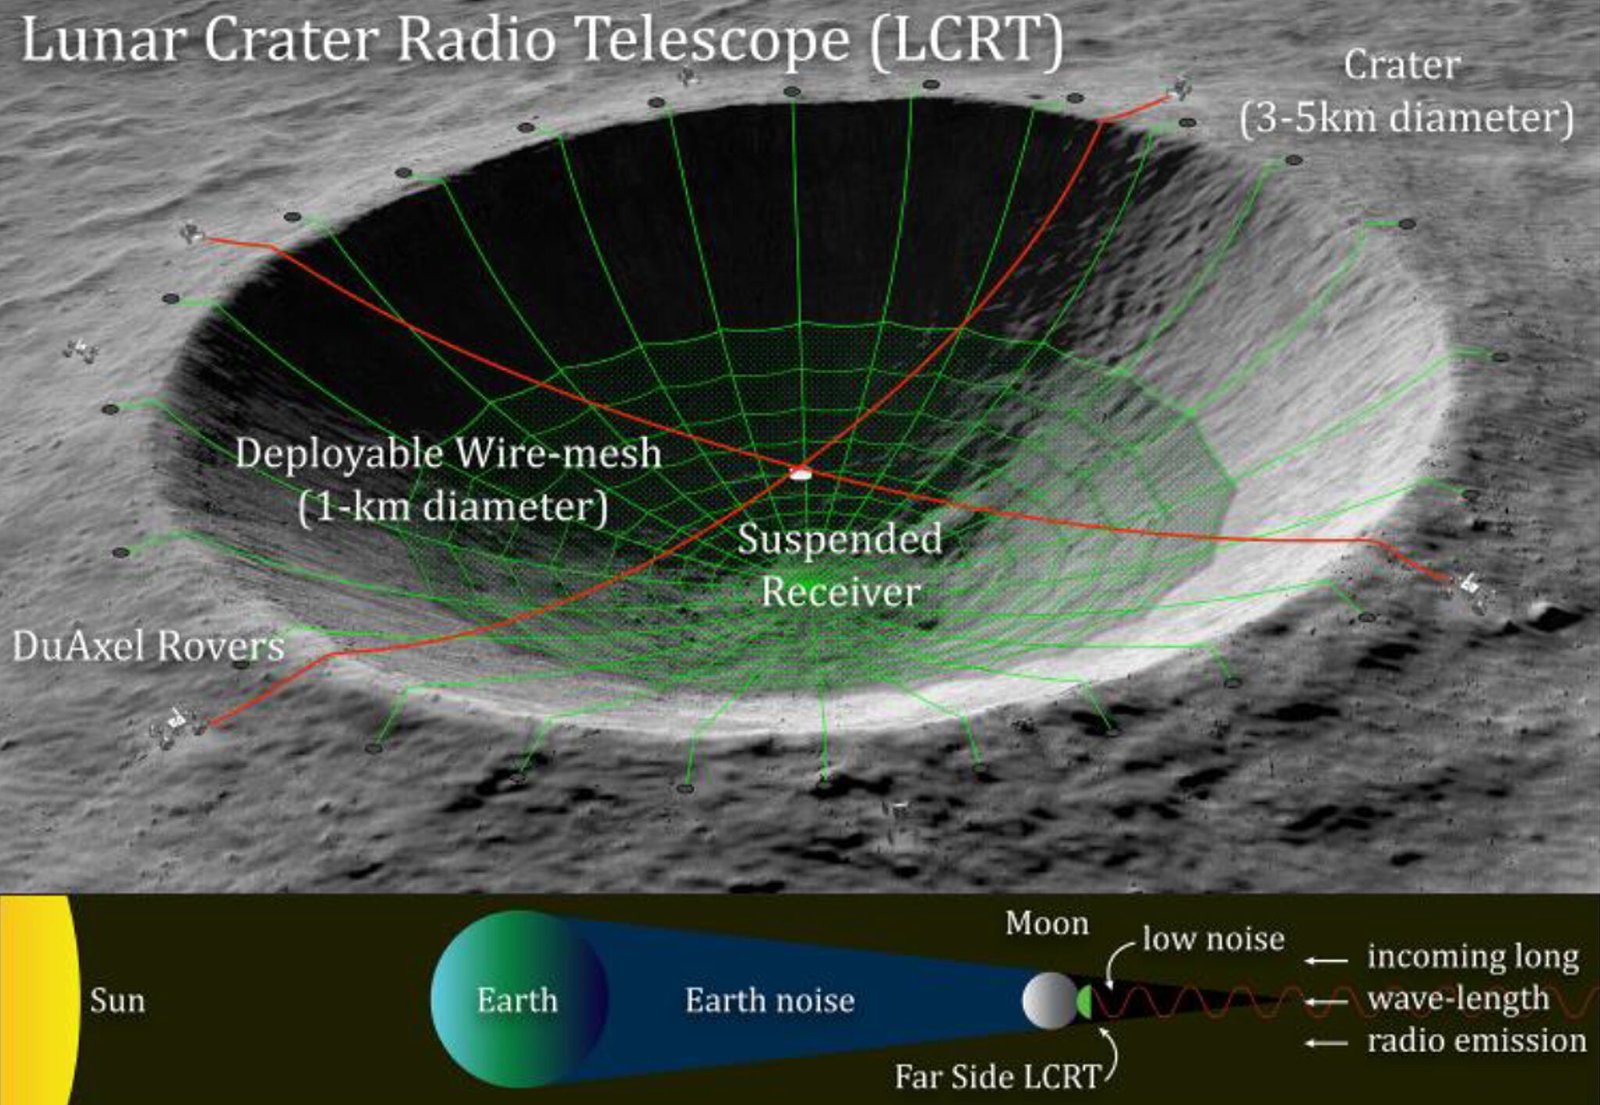 telescopio da nasa2 - NASA colocará Radio-telescópio na Lua